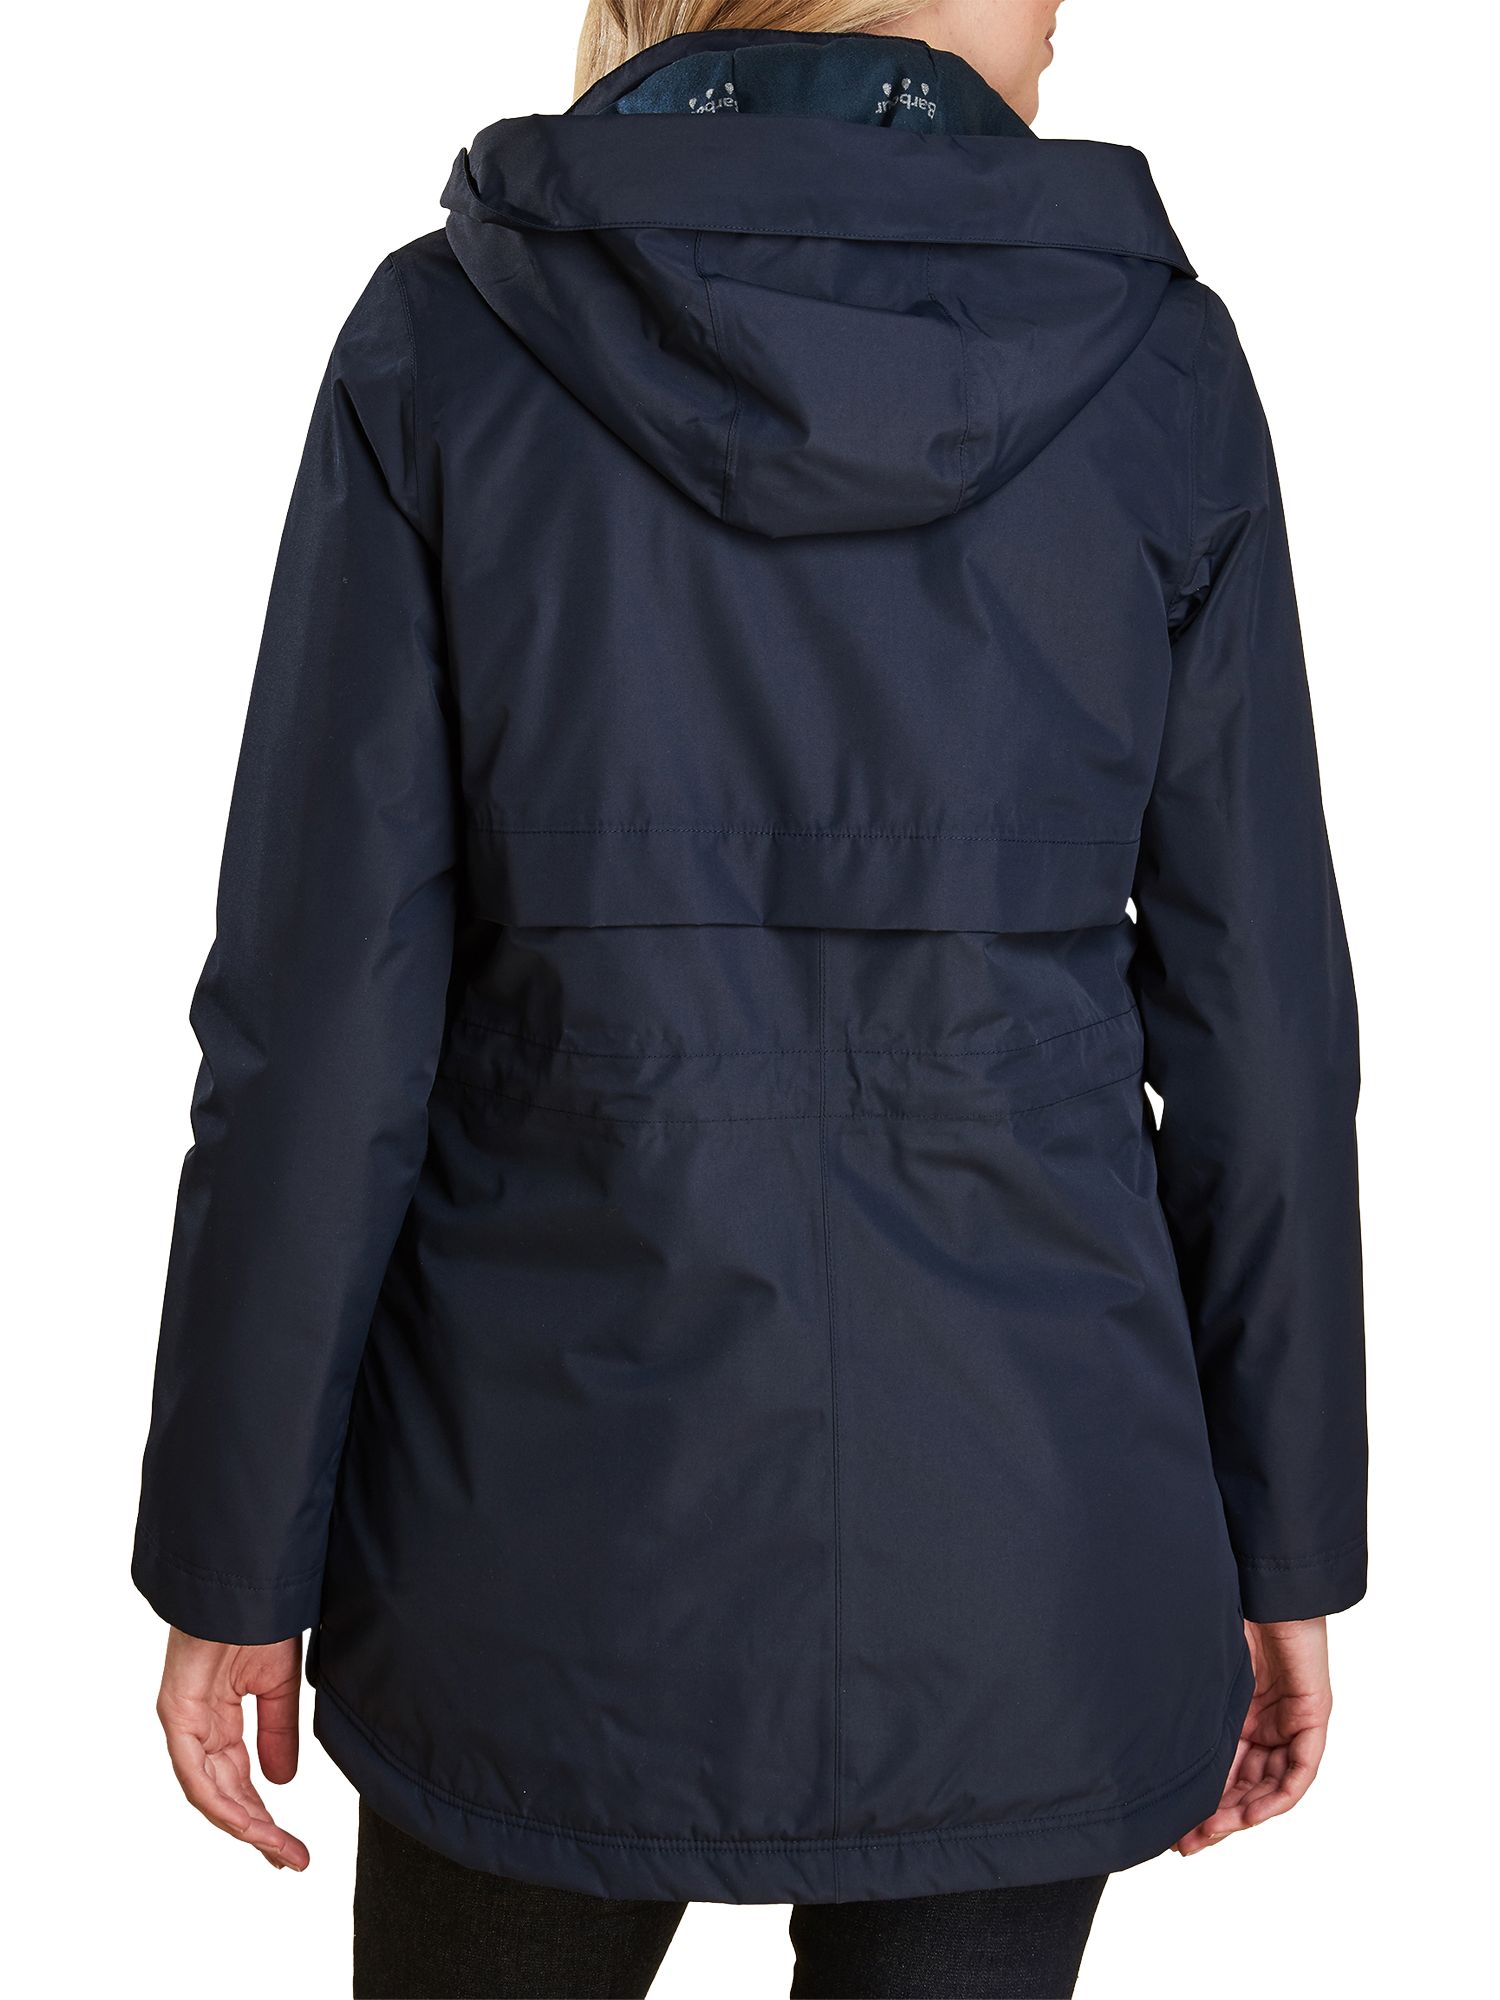 barbour altair waterproof hooded jacket